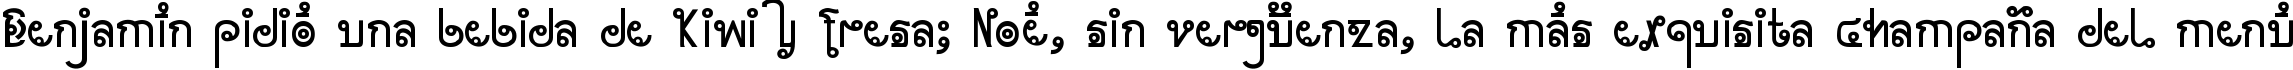 Пример написания шрифтом Cyclin текста на испанском